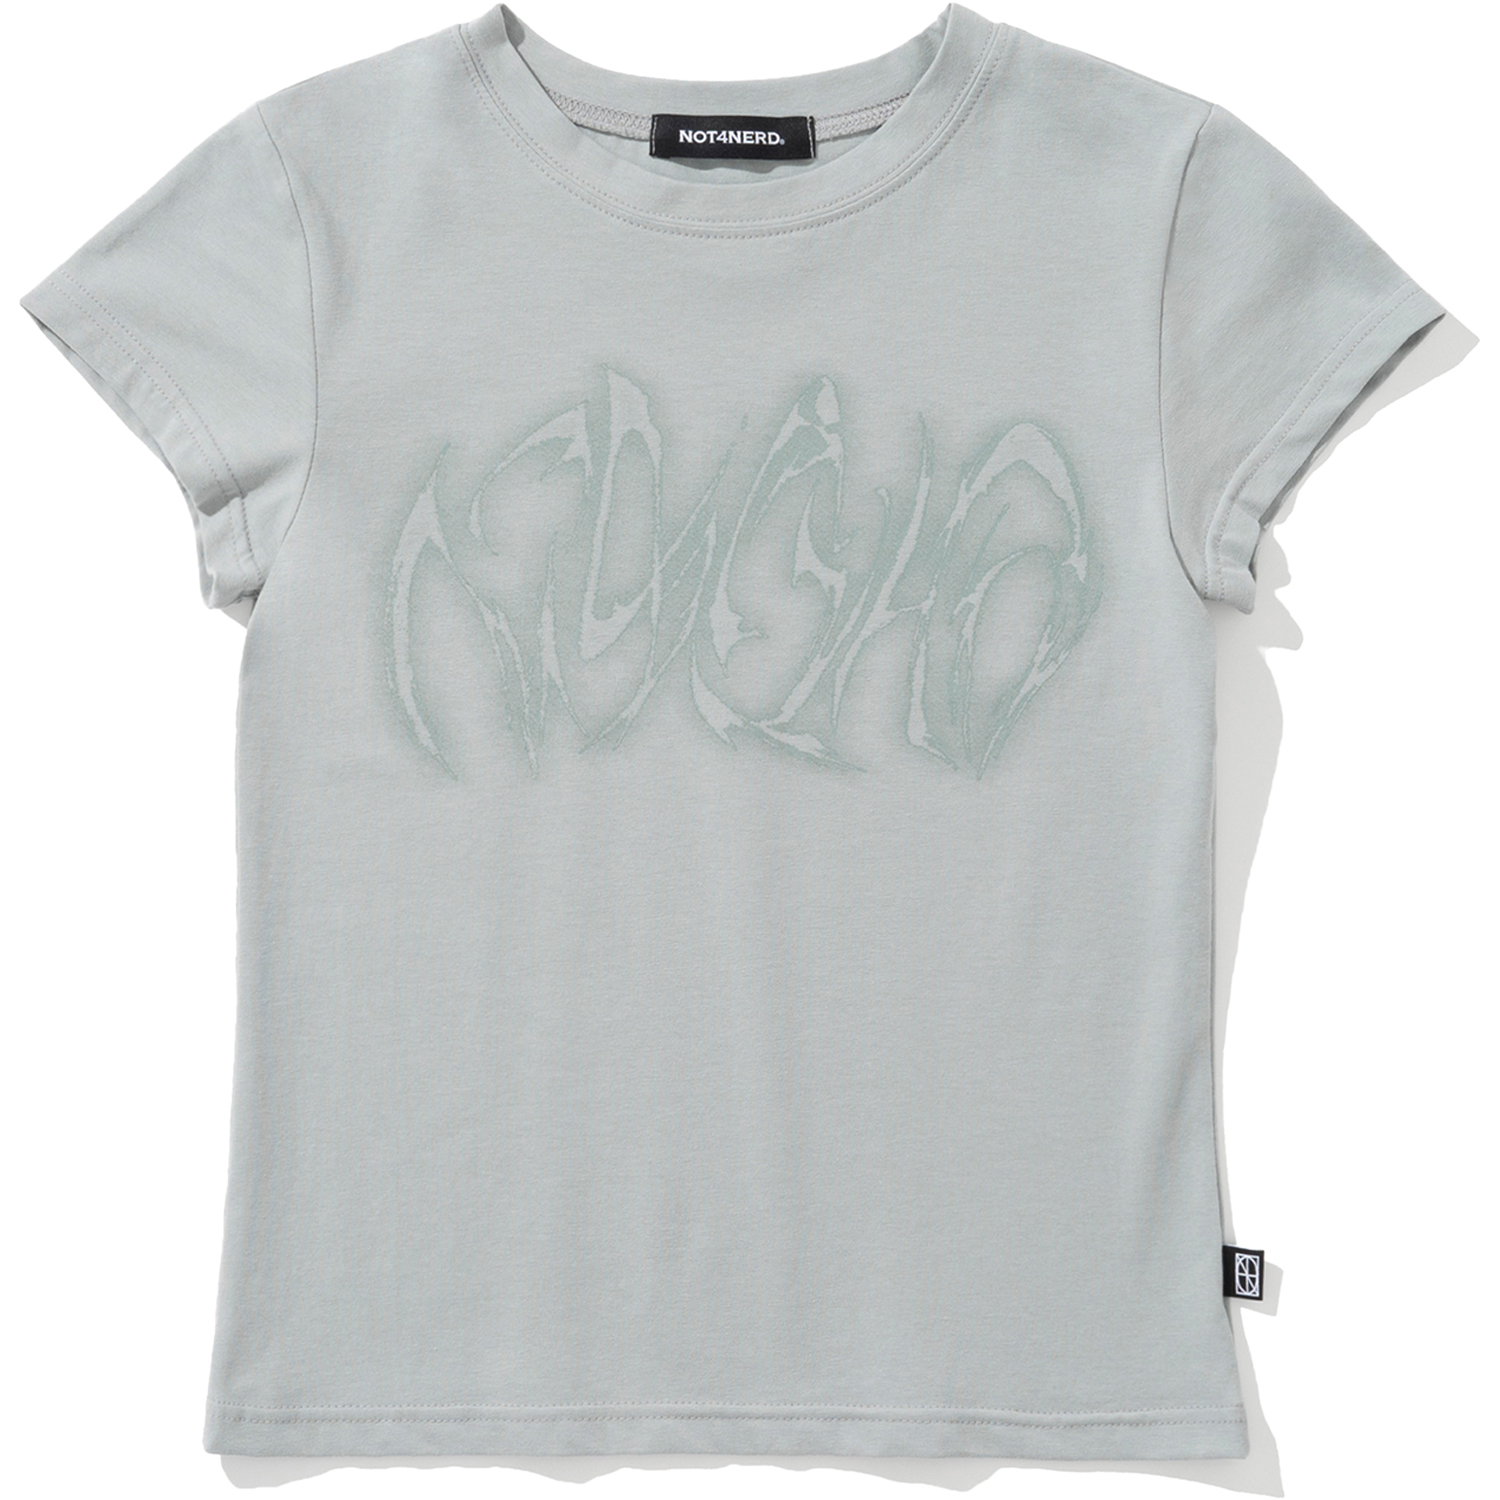 [5월 8일 예약배송] W Blur Boomerang Logo T-Shirts - Mint,NOT4NERD